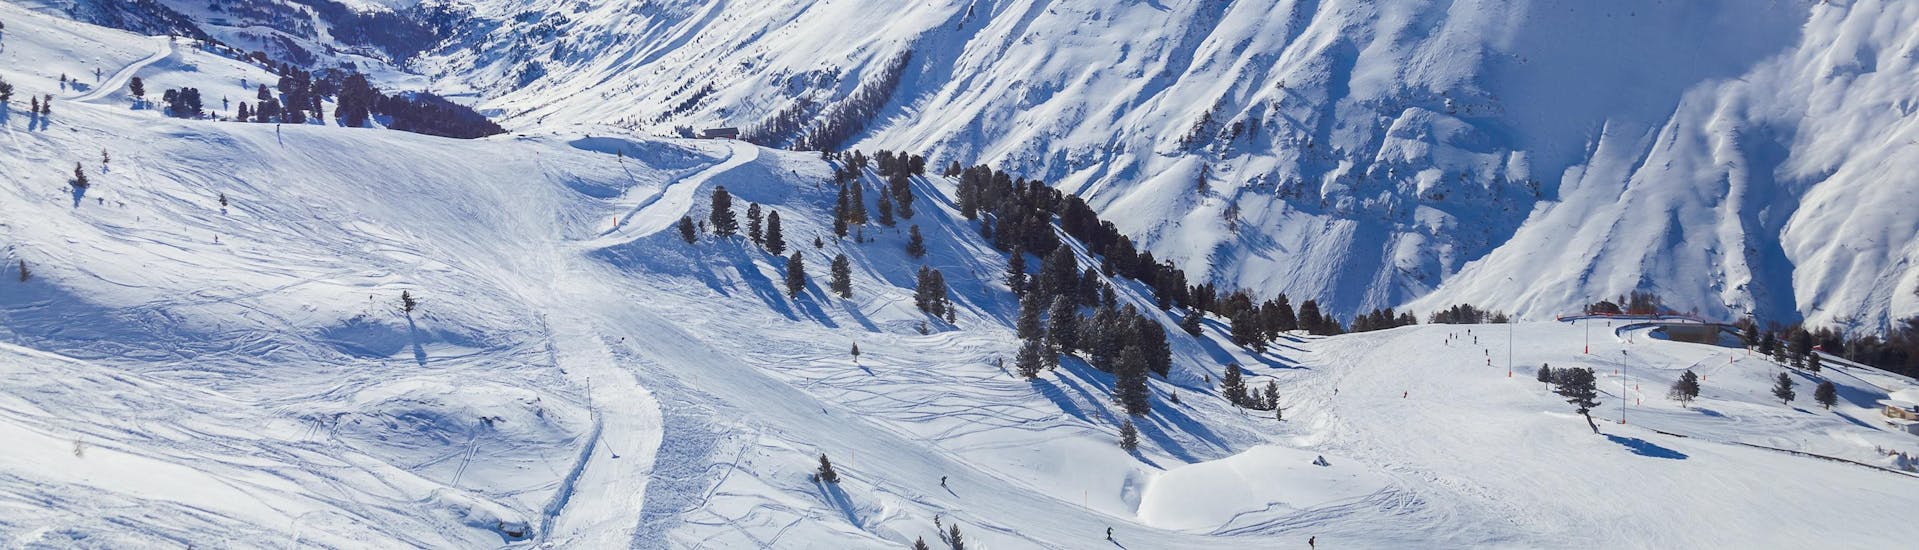 Blick auf die alpine Landschaft des Skigebiets Hochgurgl, wo die örtlichen Skischulen ihre Skikurse anbieten.